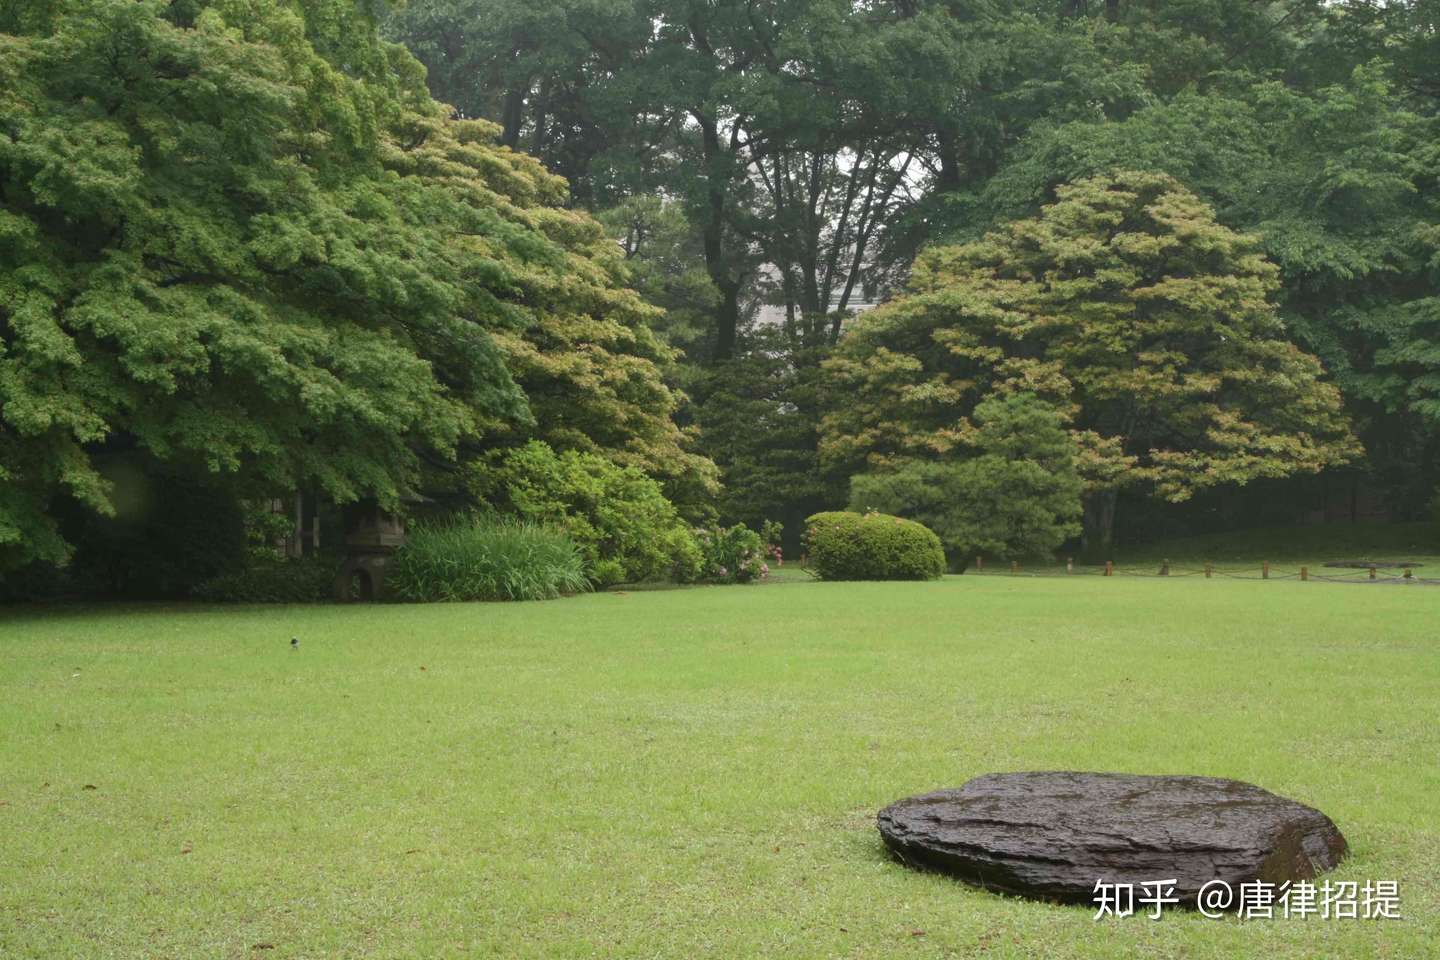 日本庭園的技术与内心情感 二 植栽术 知乎